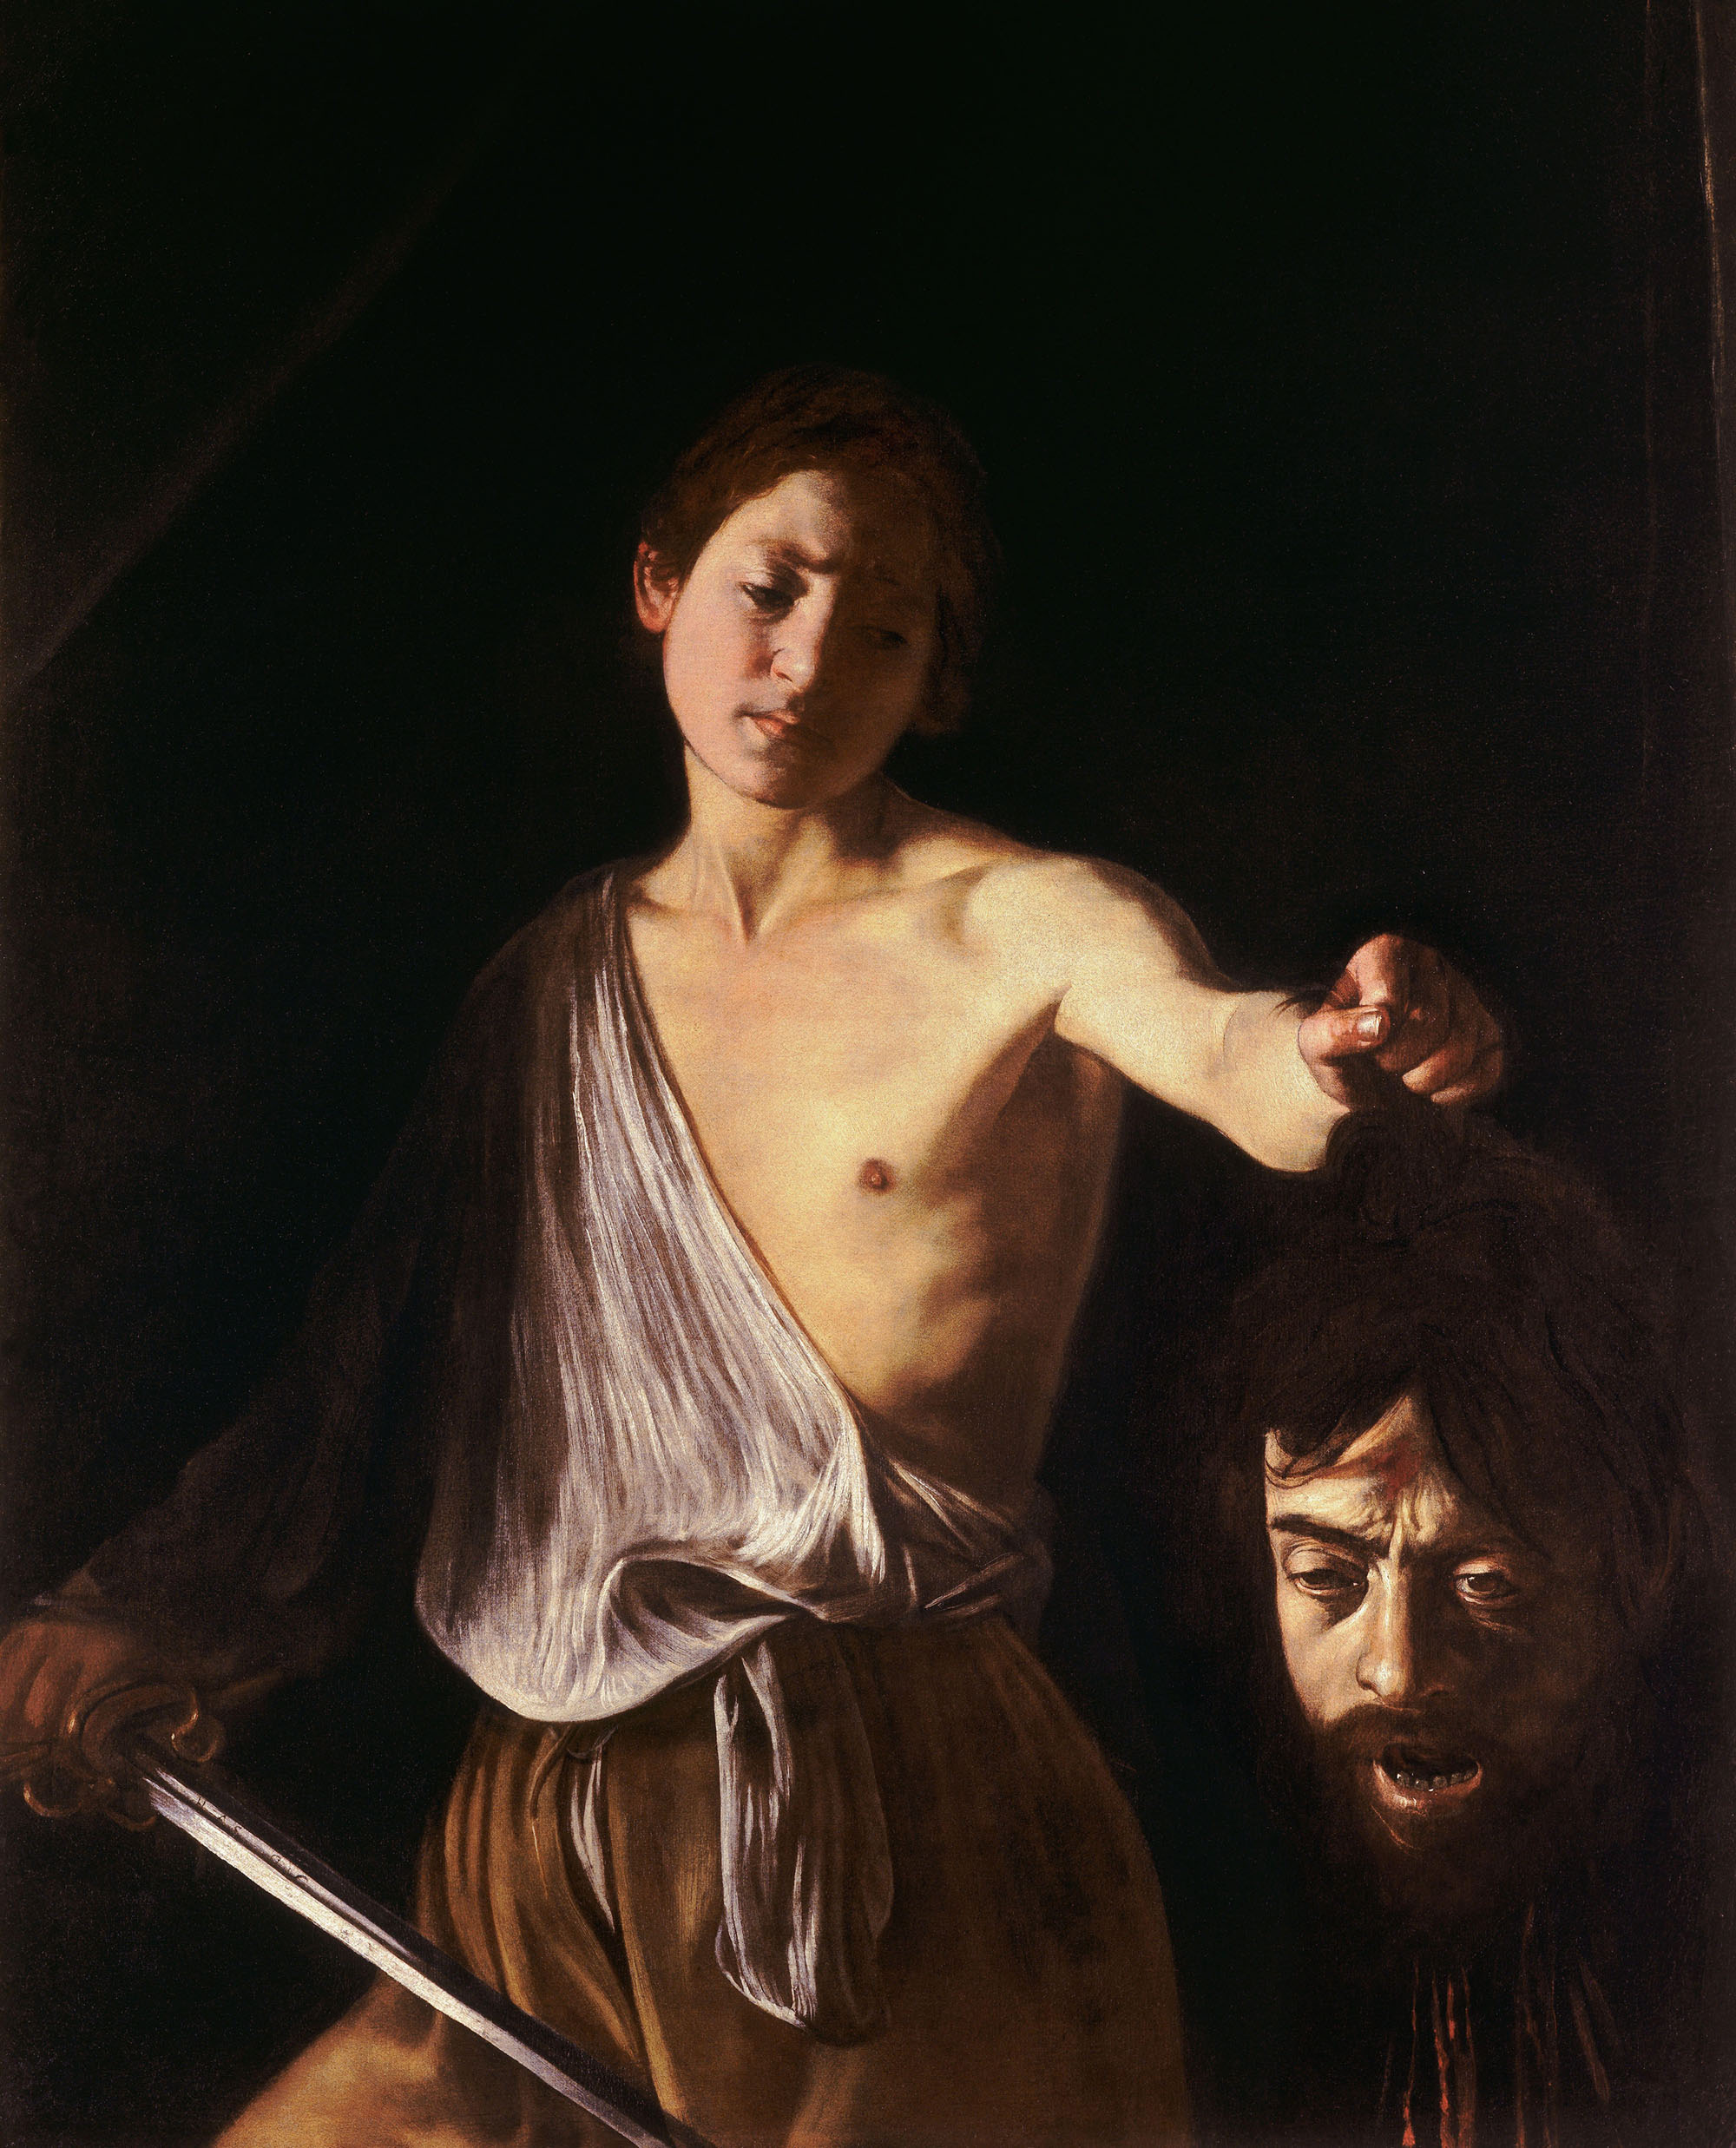 Микеланджело Меризи да Караваджо. "Давид с головой Голиафа". 1606.